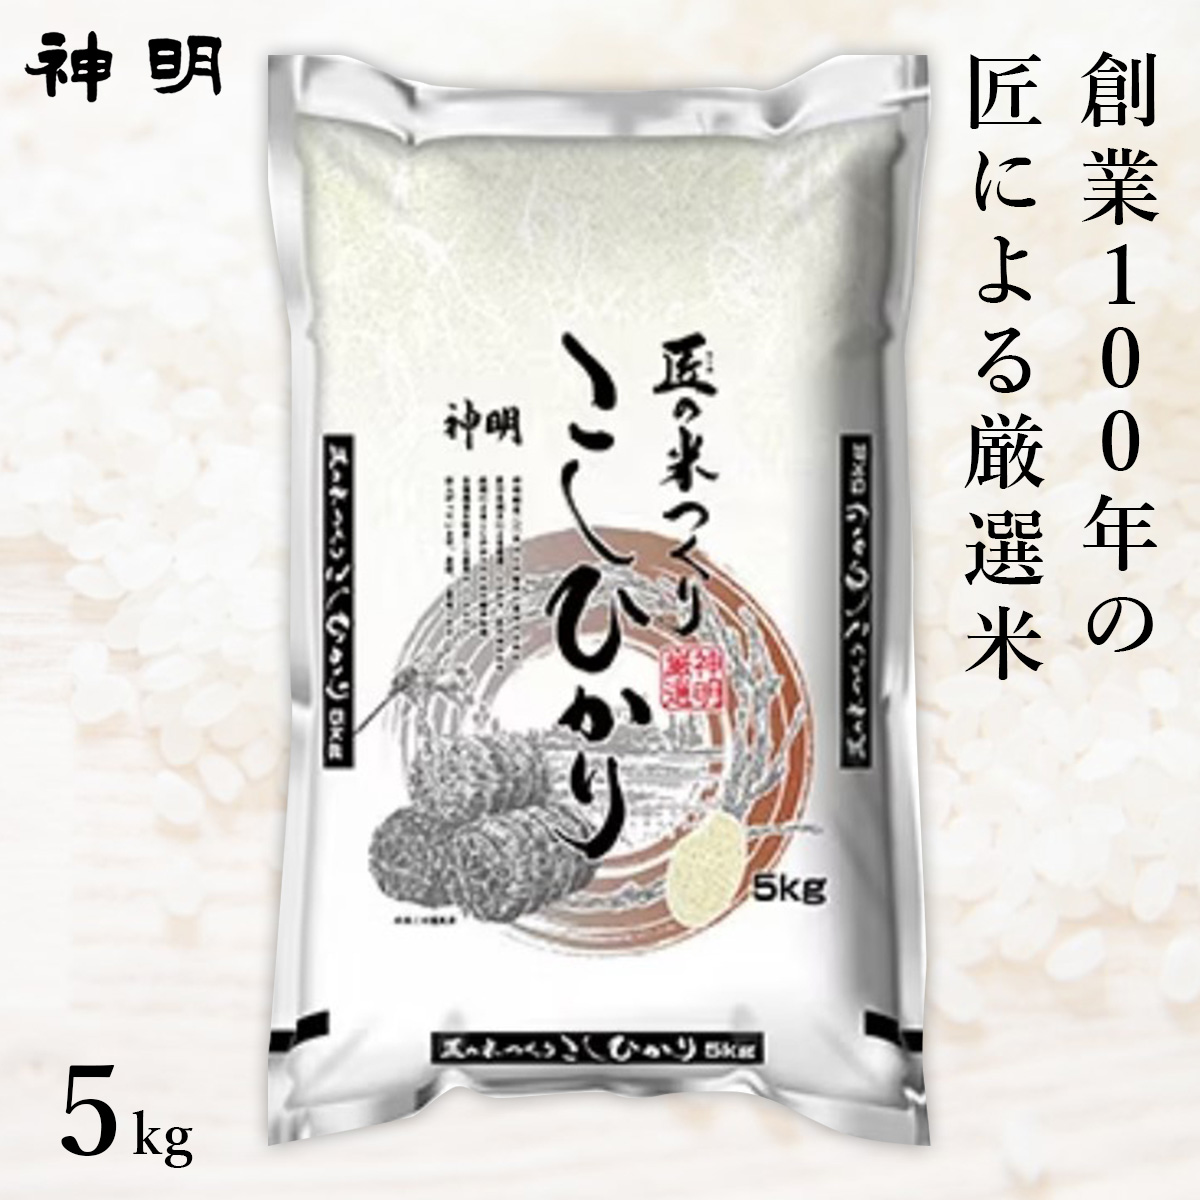 匠のお米 コシヒカリ 5kg(1袋)